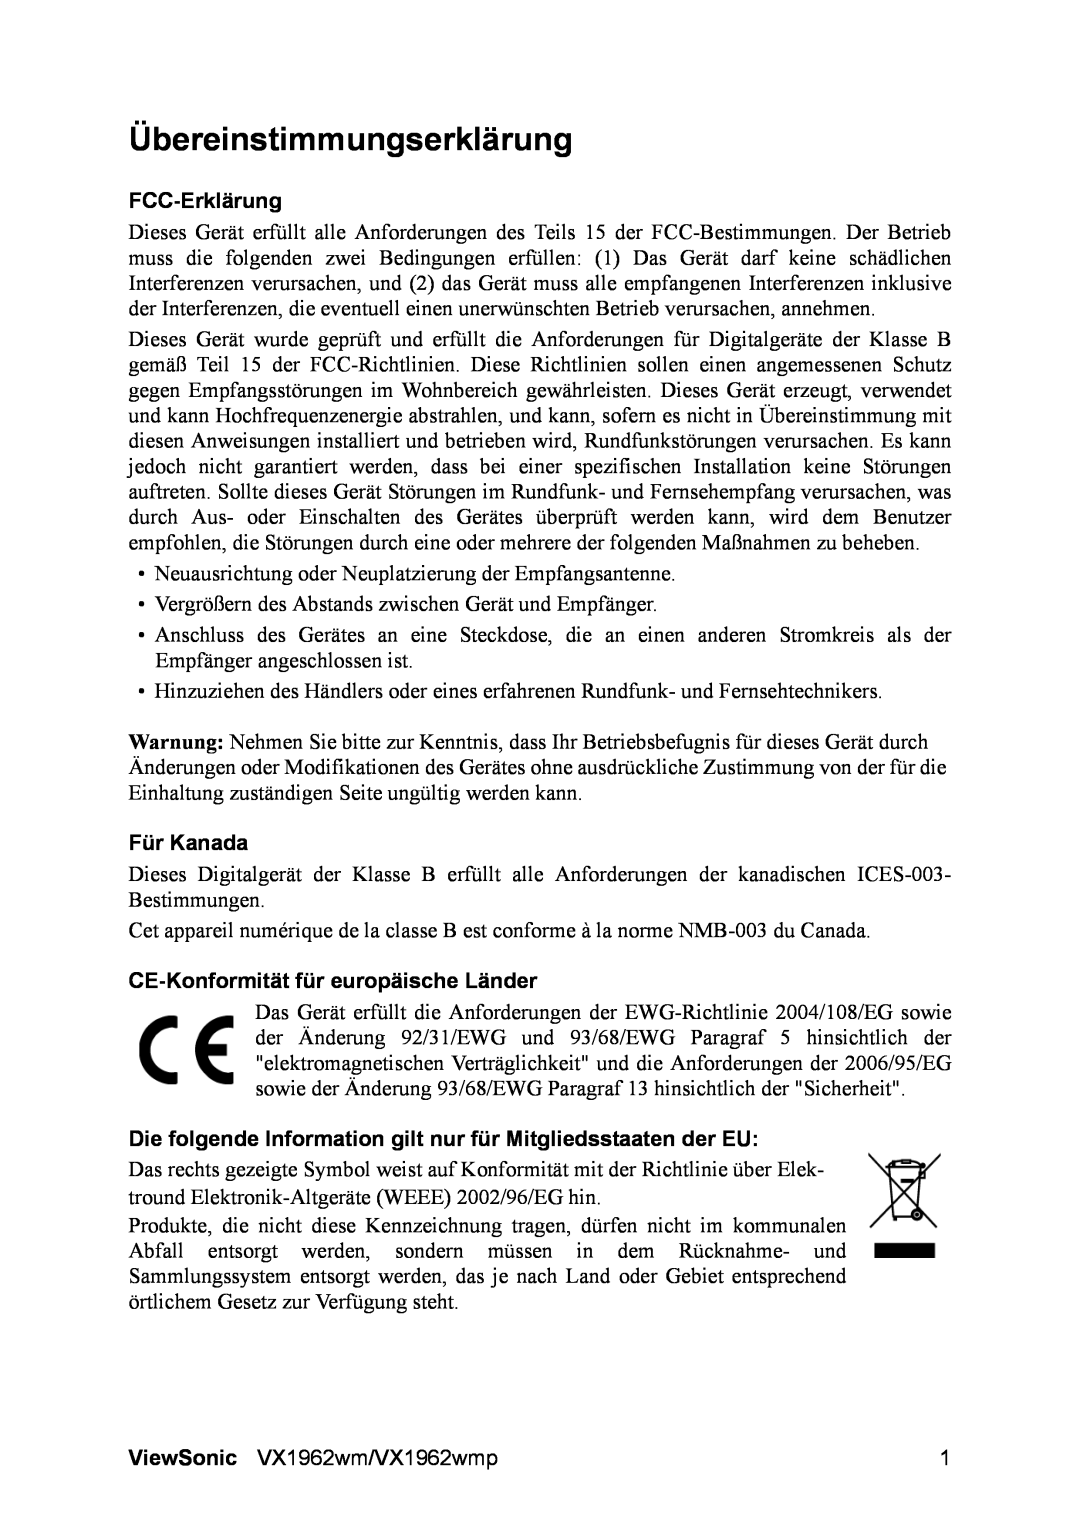 ViewSonic VX1962wm manual Übereinstimmungserklärung, FCC-Erklärung, Für Kanada, CE-Konformitätfür europäische Länder 